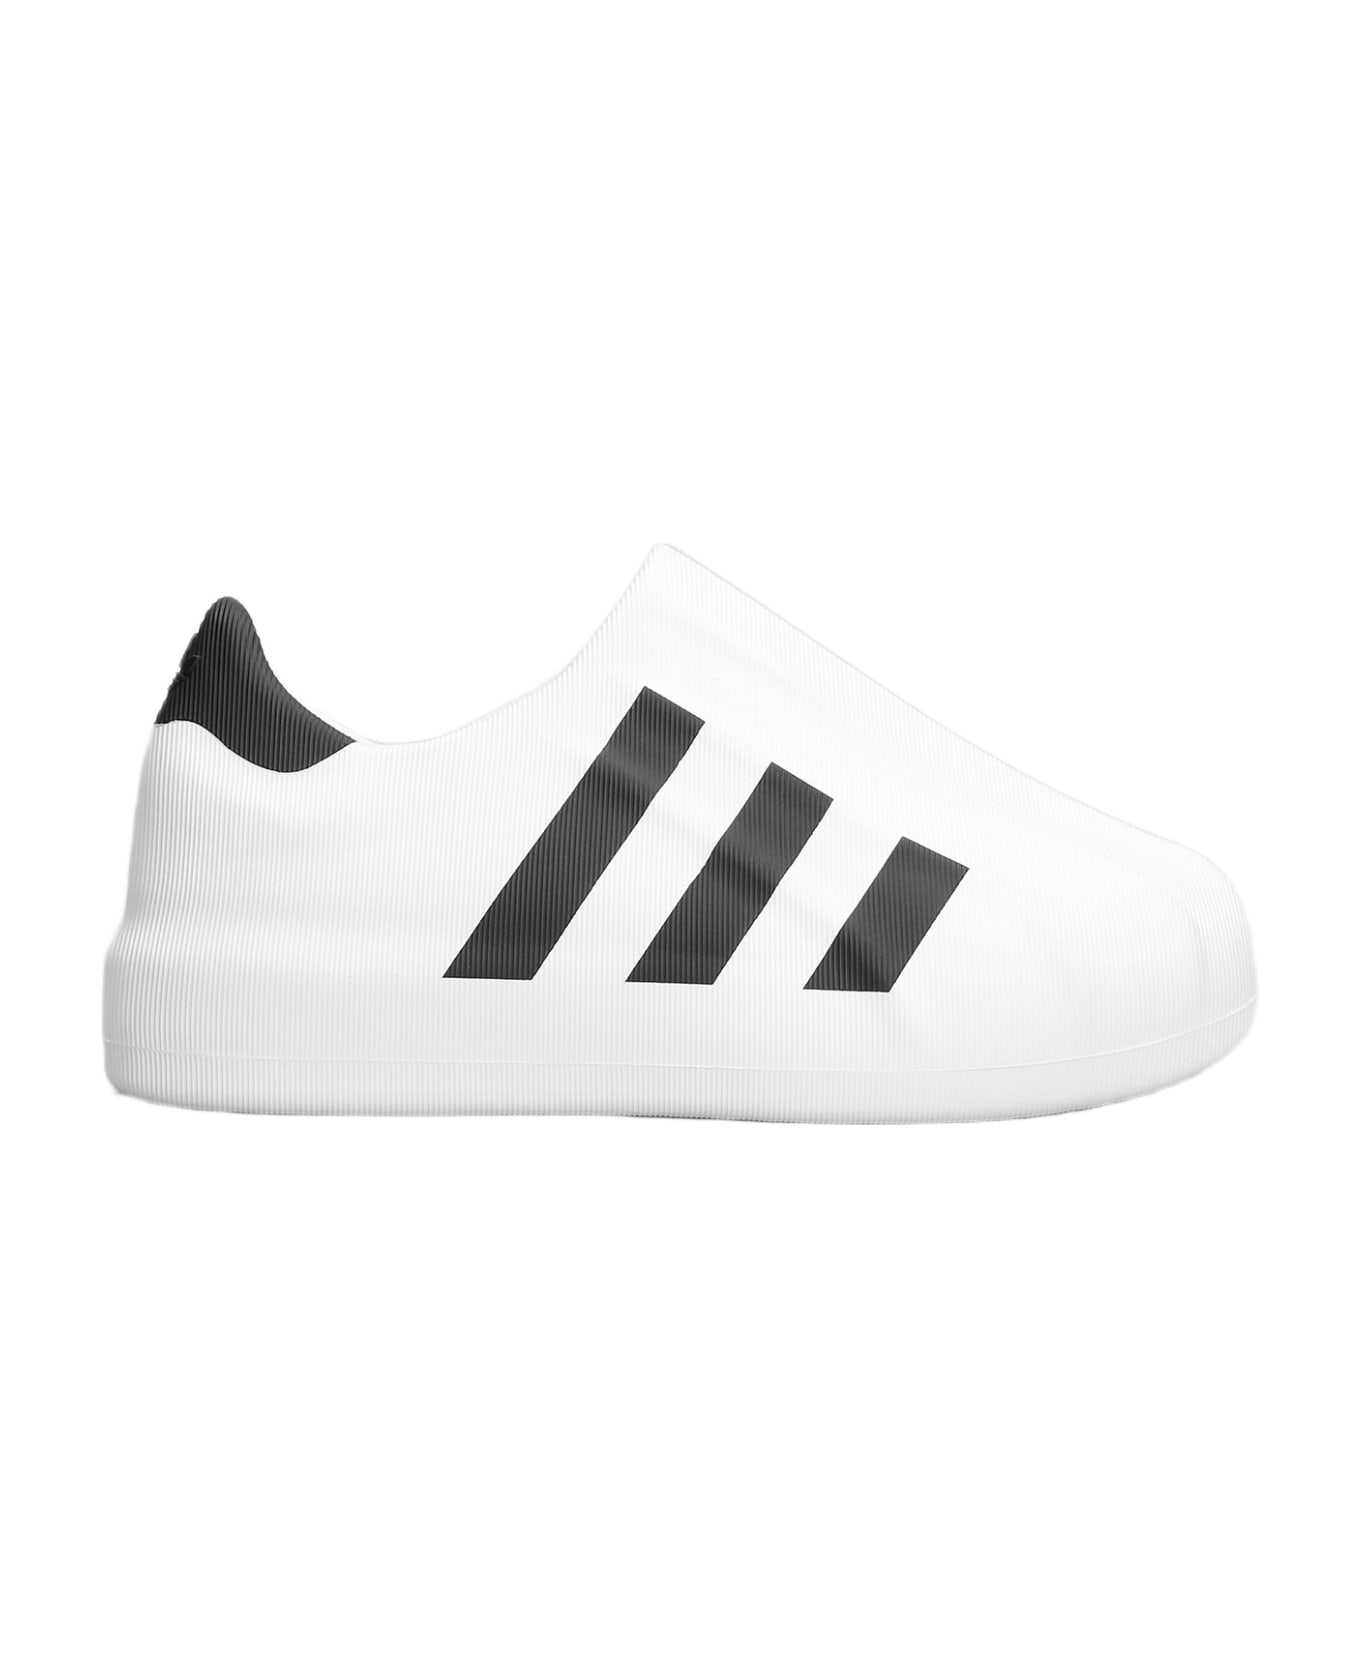 Adidas Adifom Superstar Sneakers - Cwhite Cblack Cblack